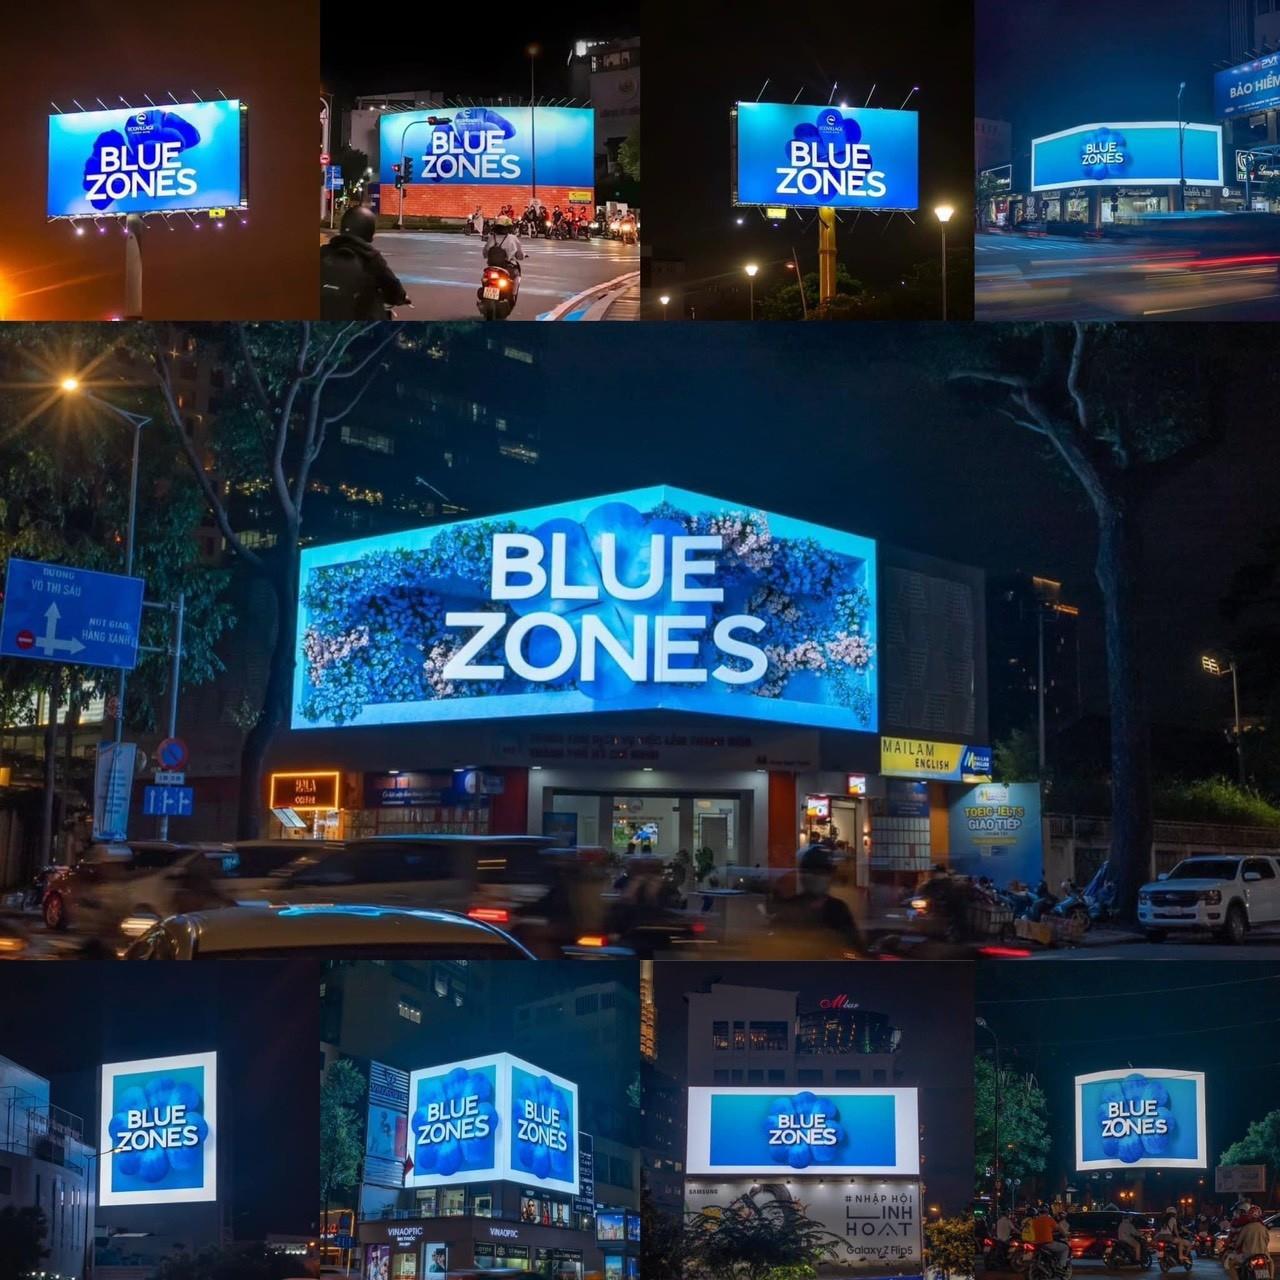 “Blue Zones” là gì mà khiến mạng xã hội xôn xao bàn tán?